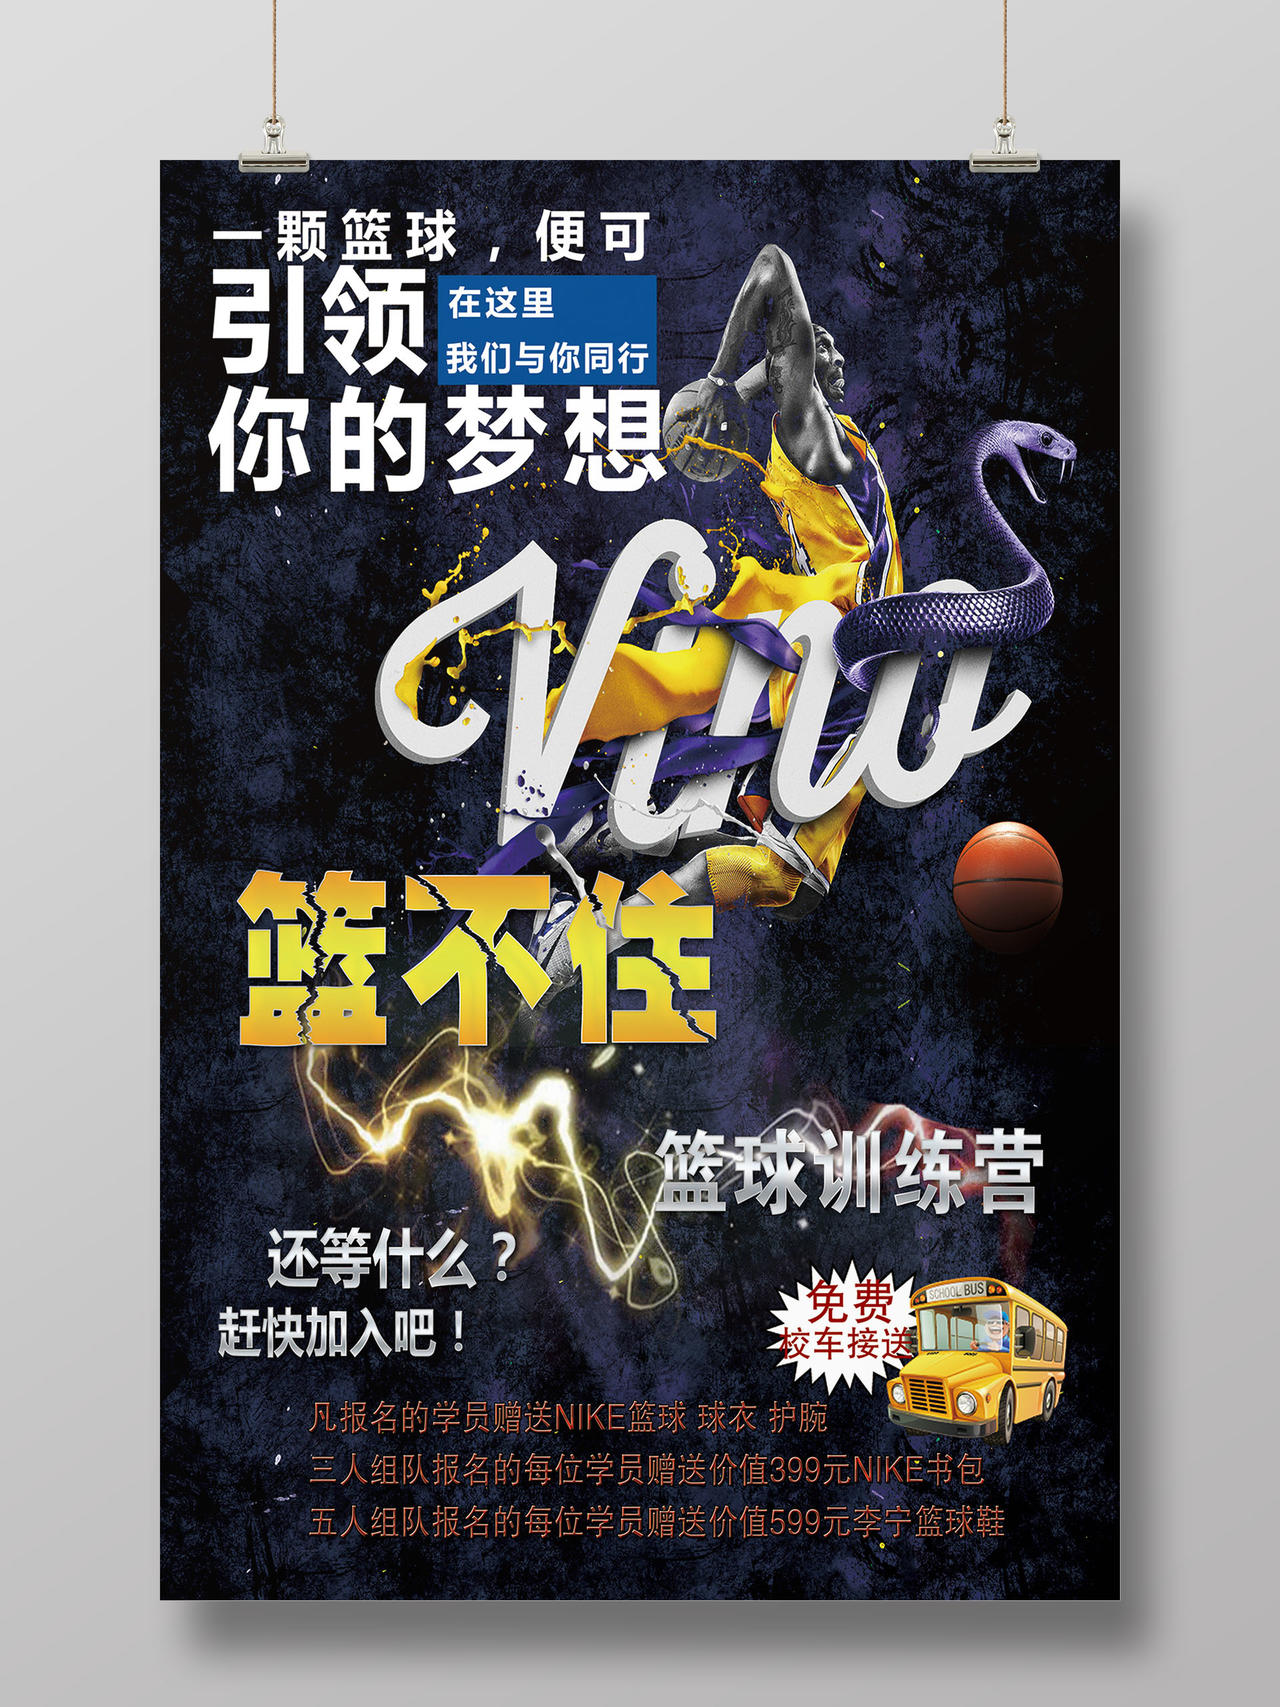 创意动感篮球训练营宣传海报